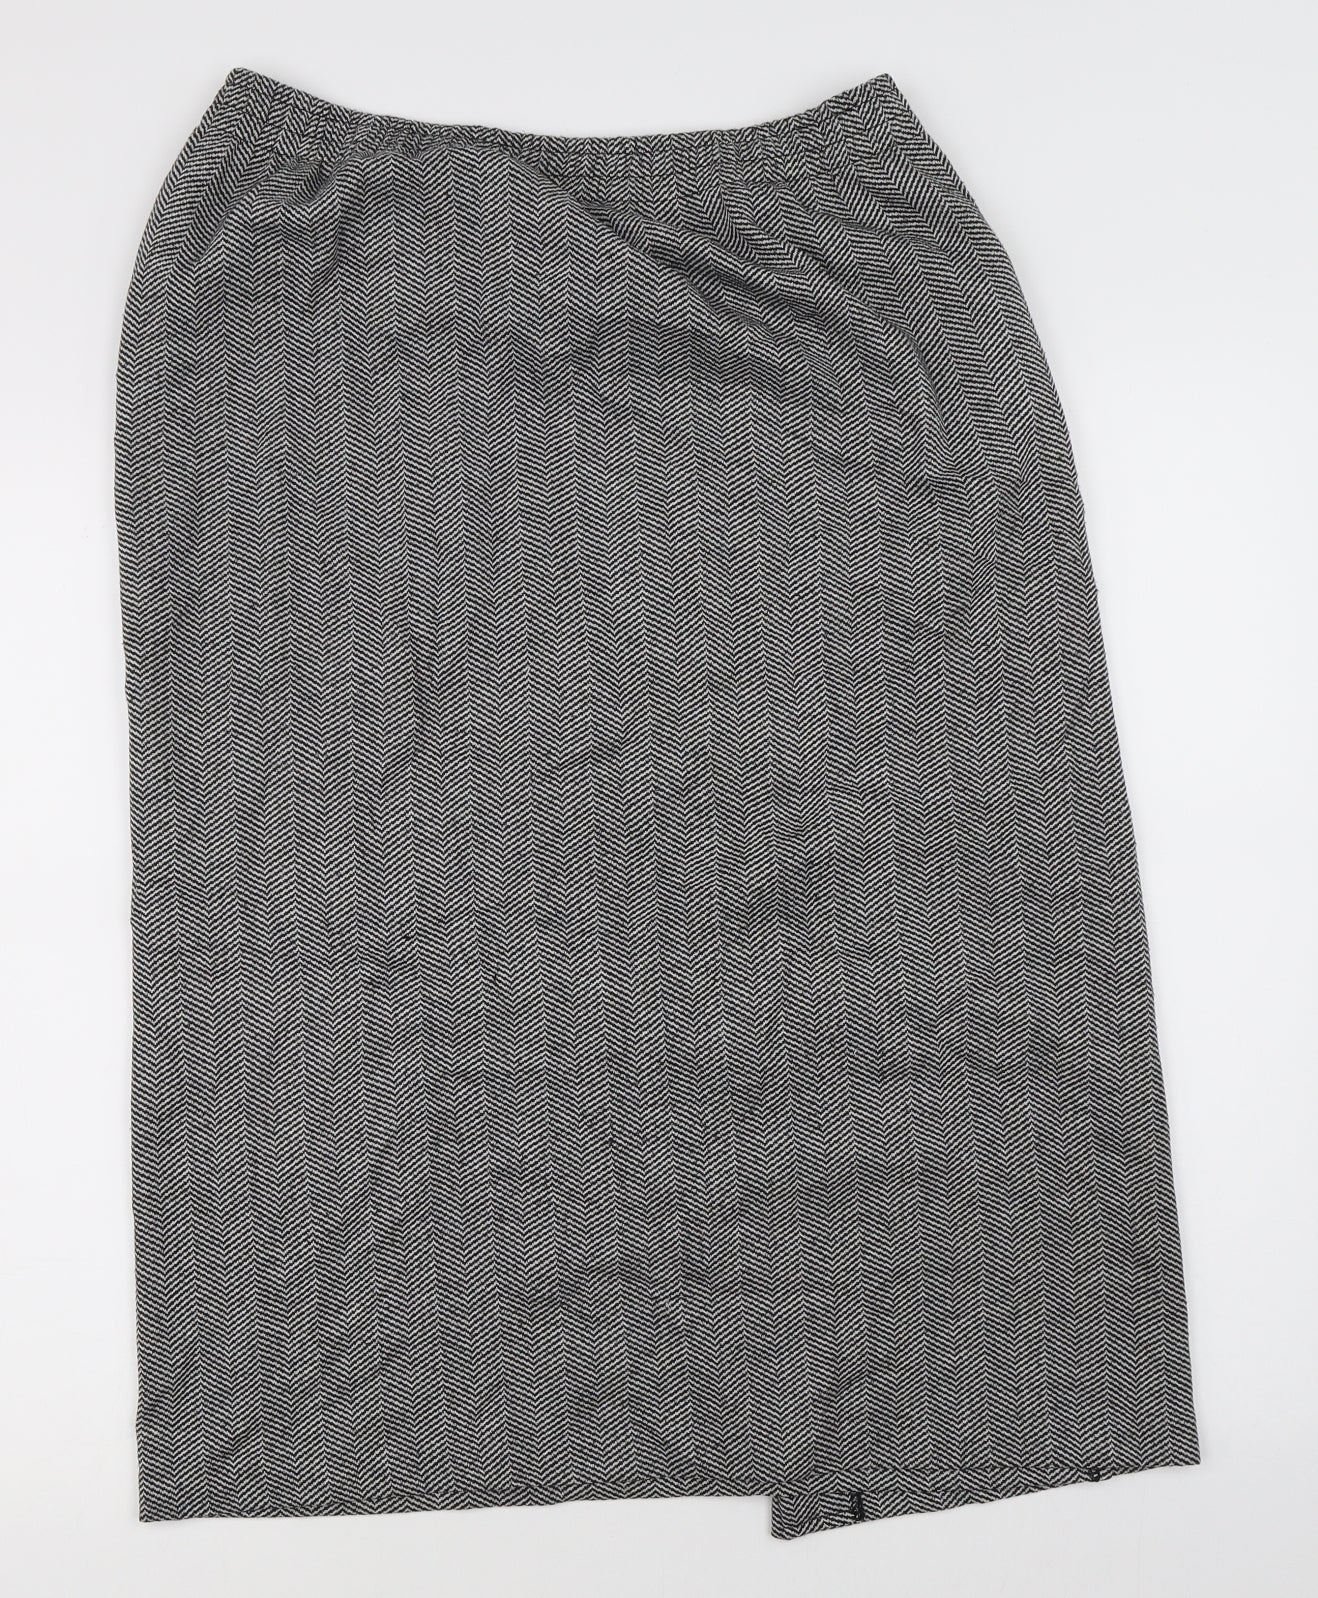 WEEKENDERS Womens Grey Herringbone  A-Line Skirt Size M